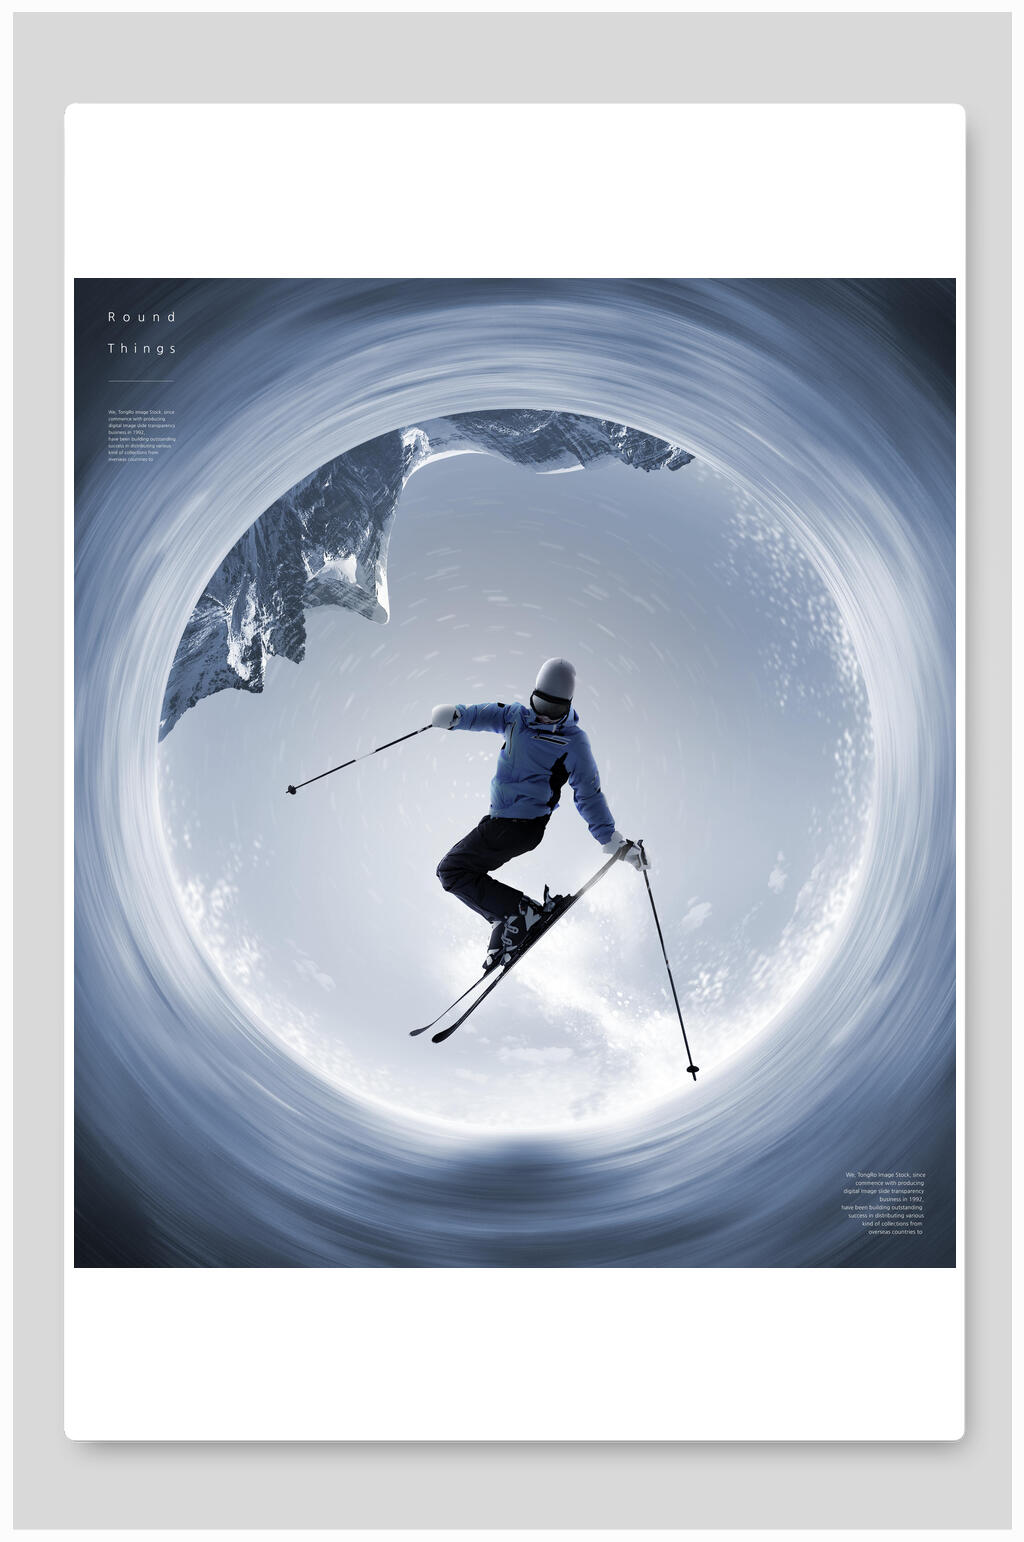 银砂之翼滑雪海报图片